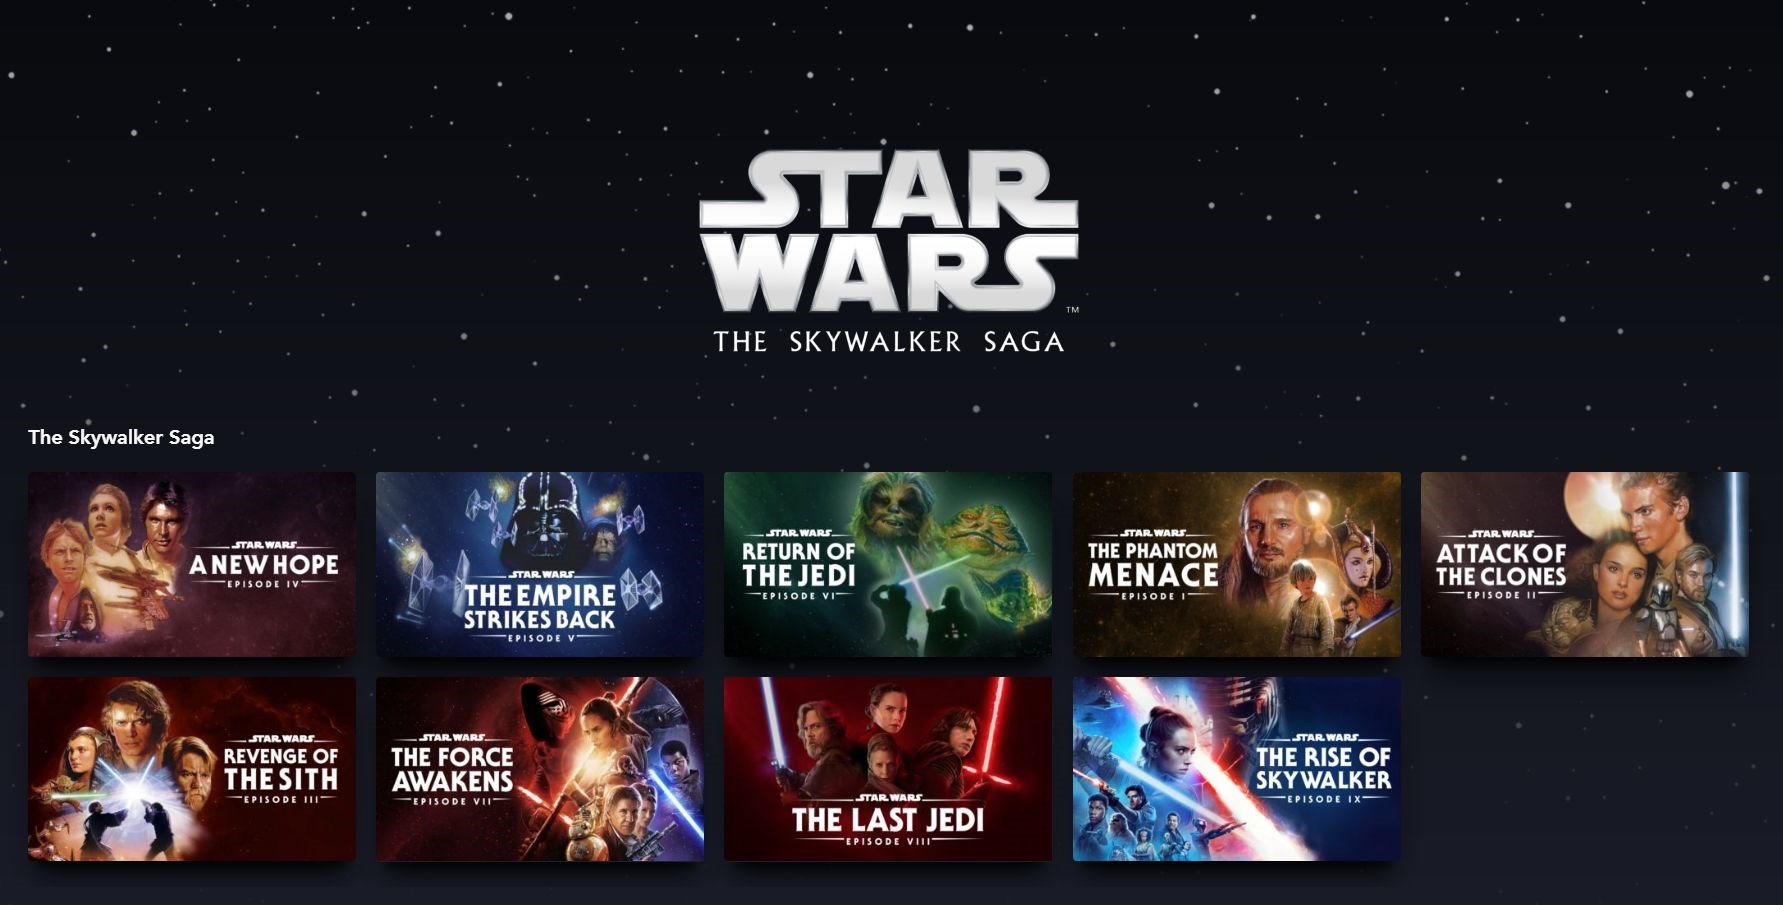 Star Wars izleme sırası çıkış tarihi